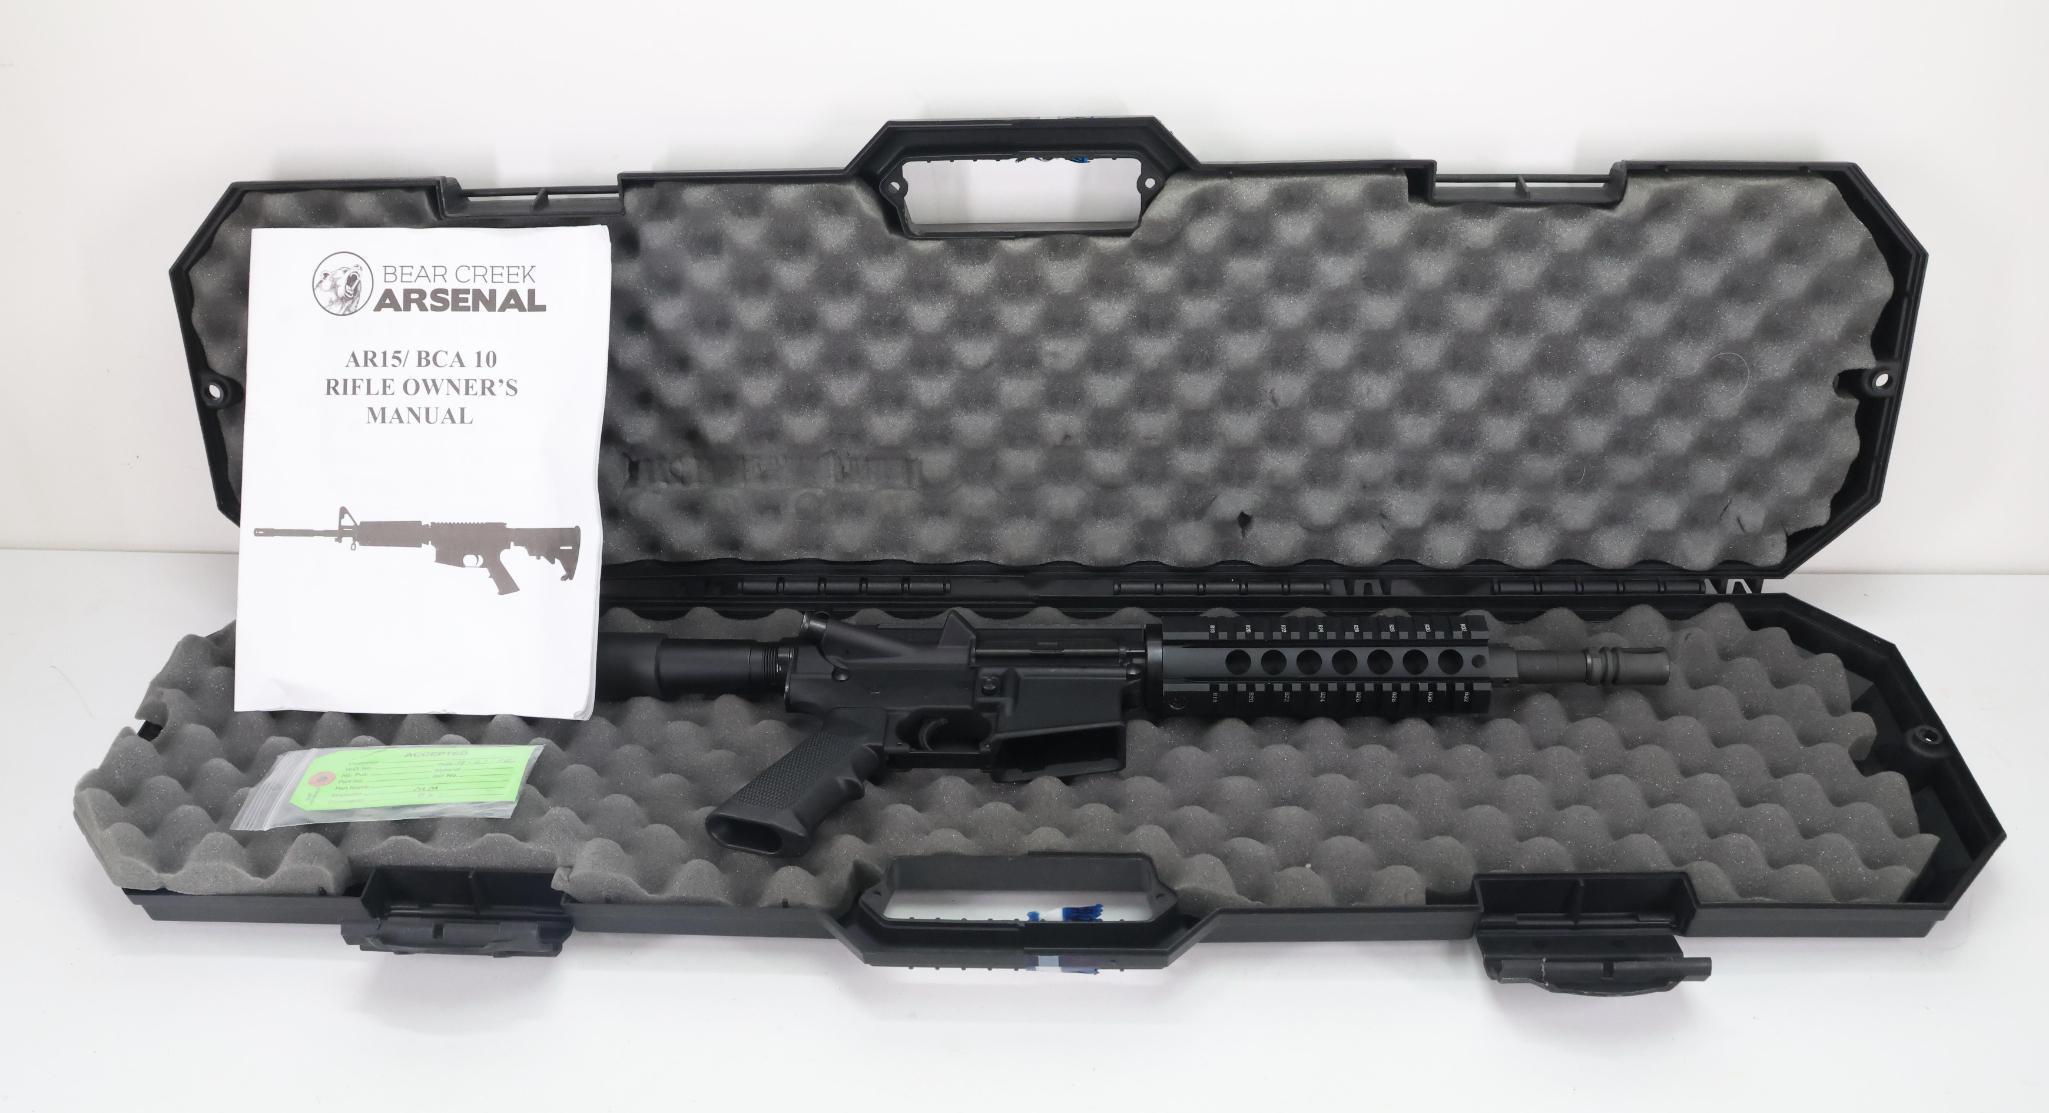 Bear Creek Arsenal BCA15P Semi Automatic Pistol